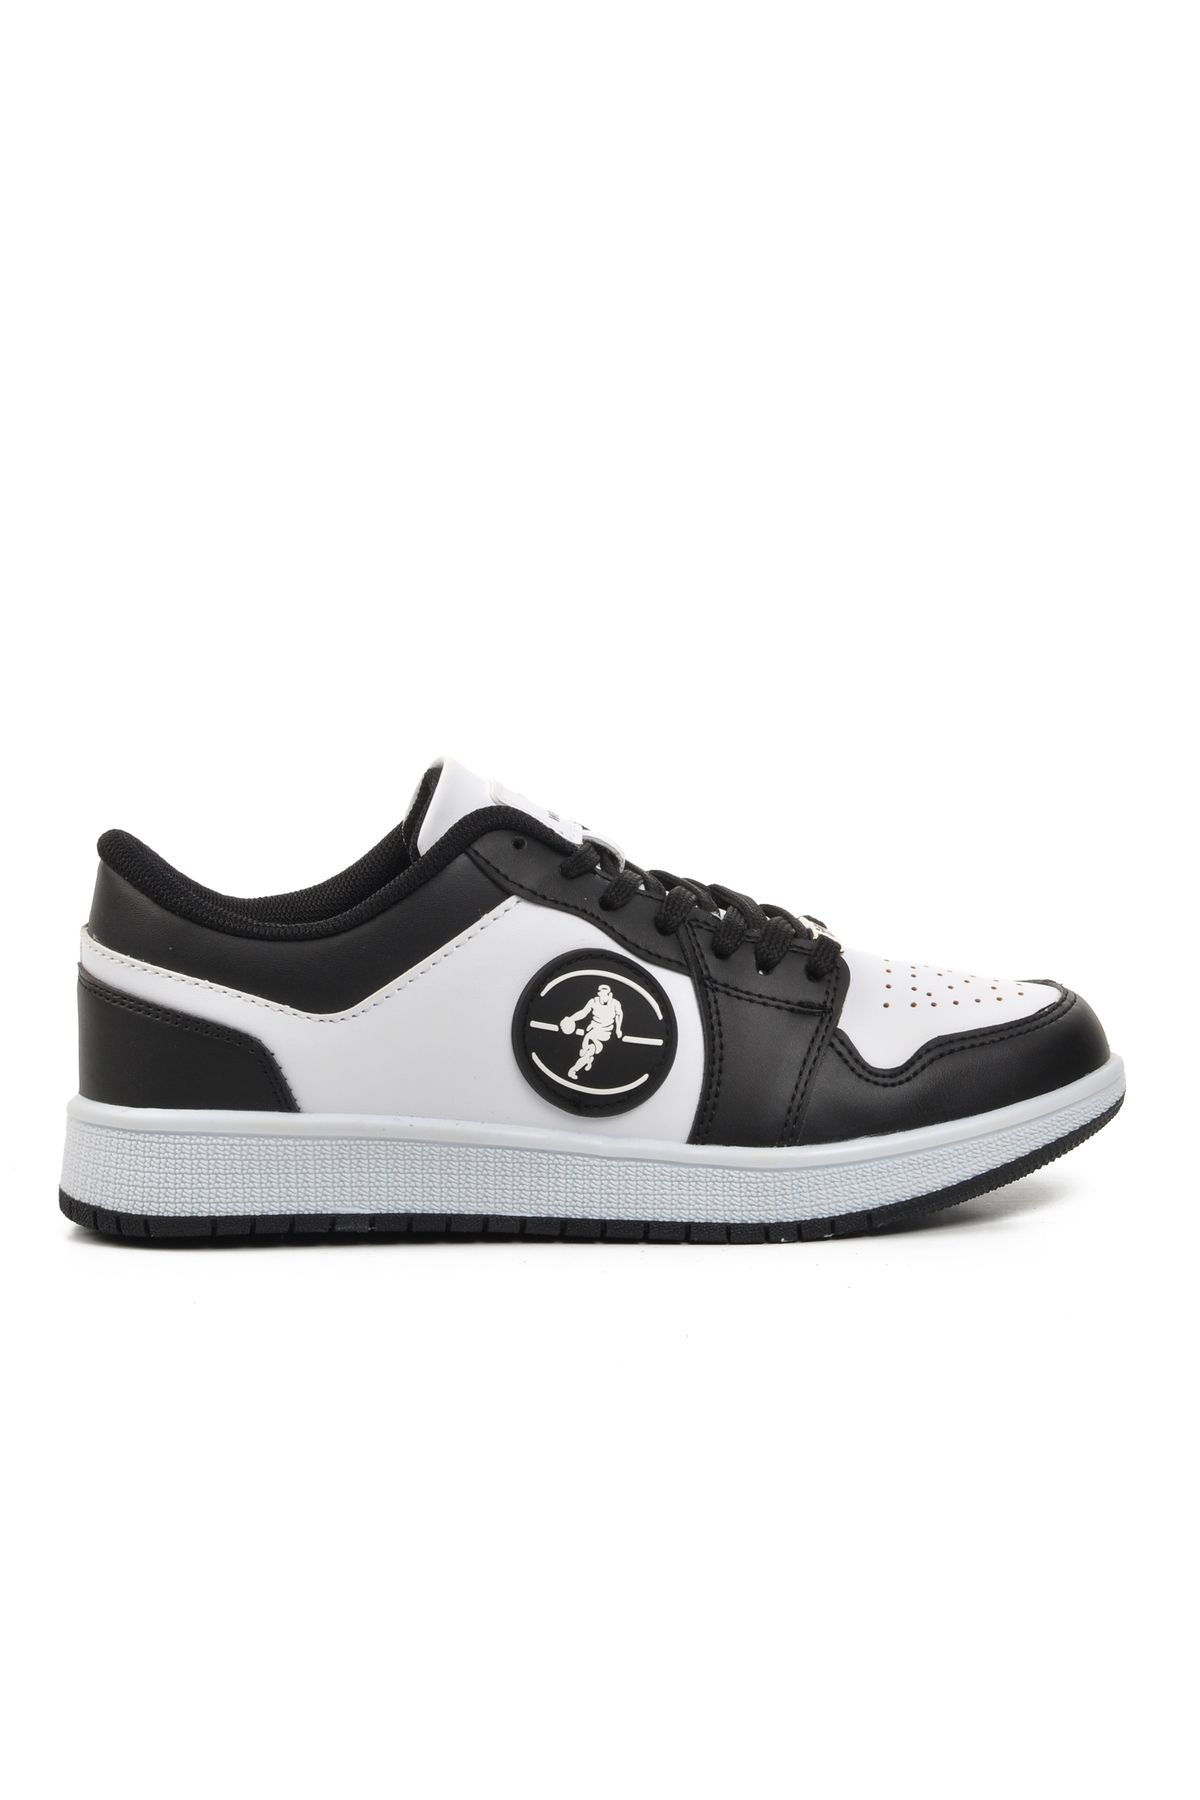 WALKWAY Sloga Siyah-Siyah-Beyaz Unisex Sneaker